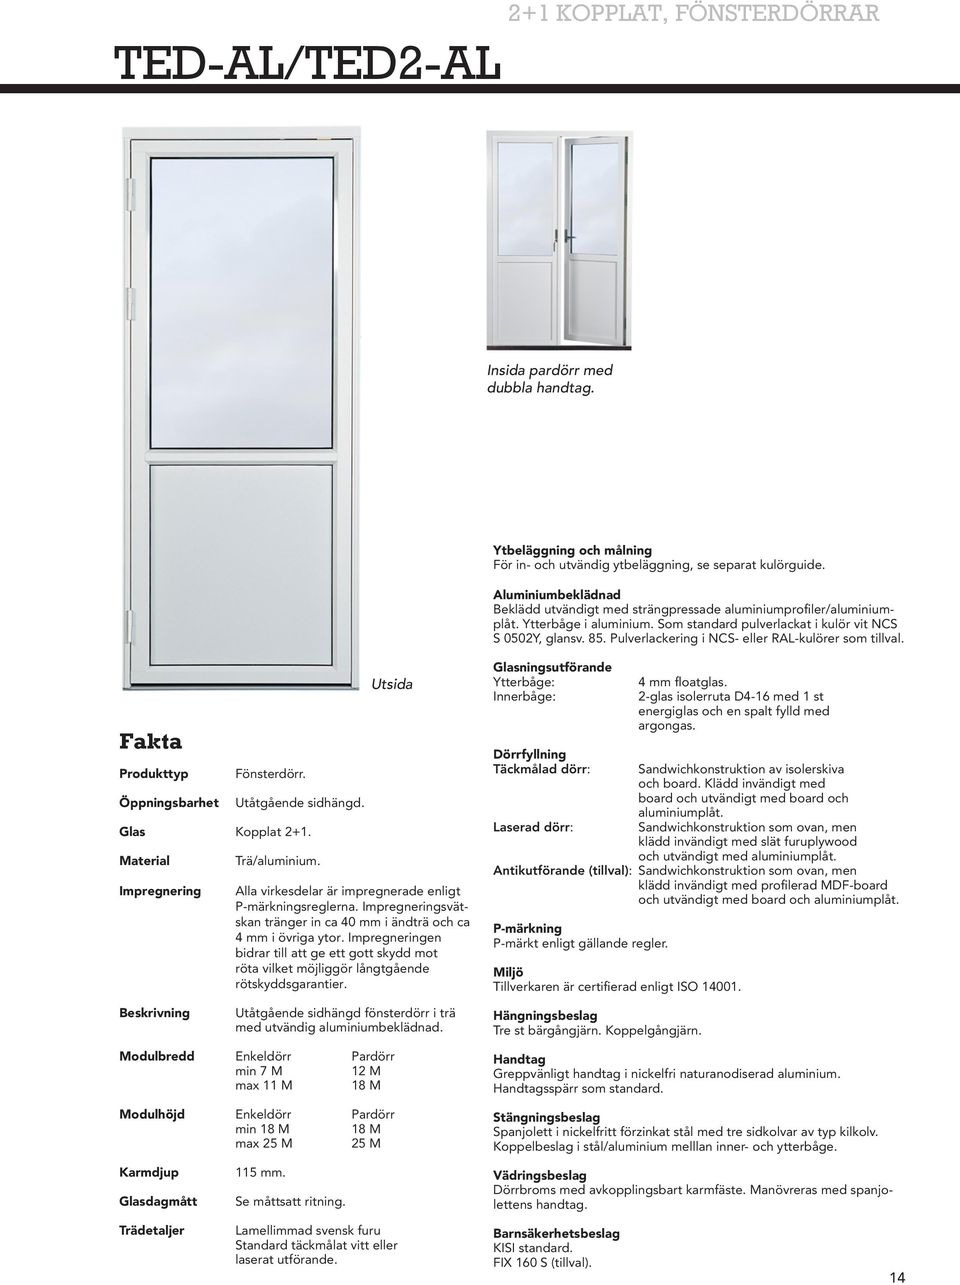 Pulverlackering i NCS- eller RAL-kulörer som tillval. Fakta Produkttyp Öppningsbarhet Fönsterdörr. Utåtgående sidhängd. Glas Kopplat 2+1. Material Impregnering Trä/aluminium.